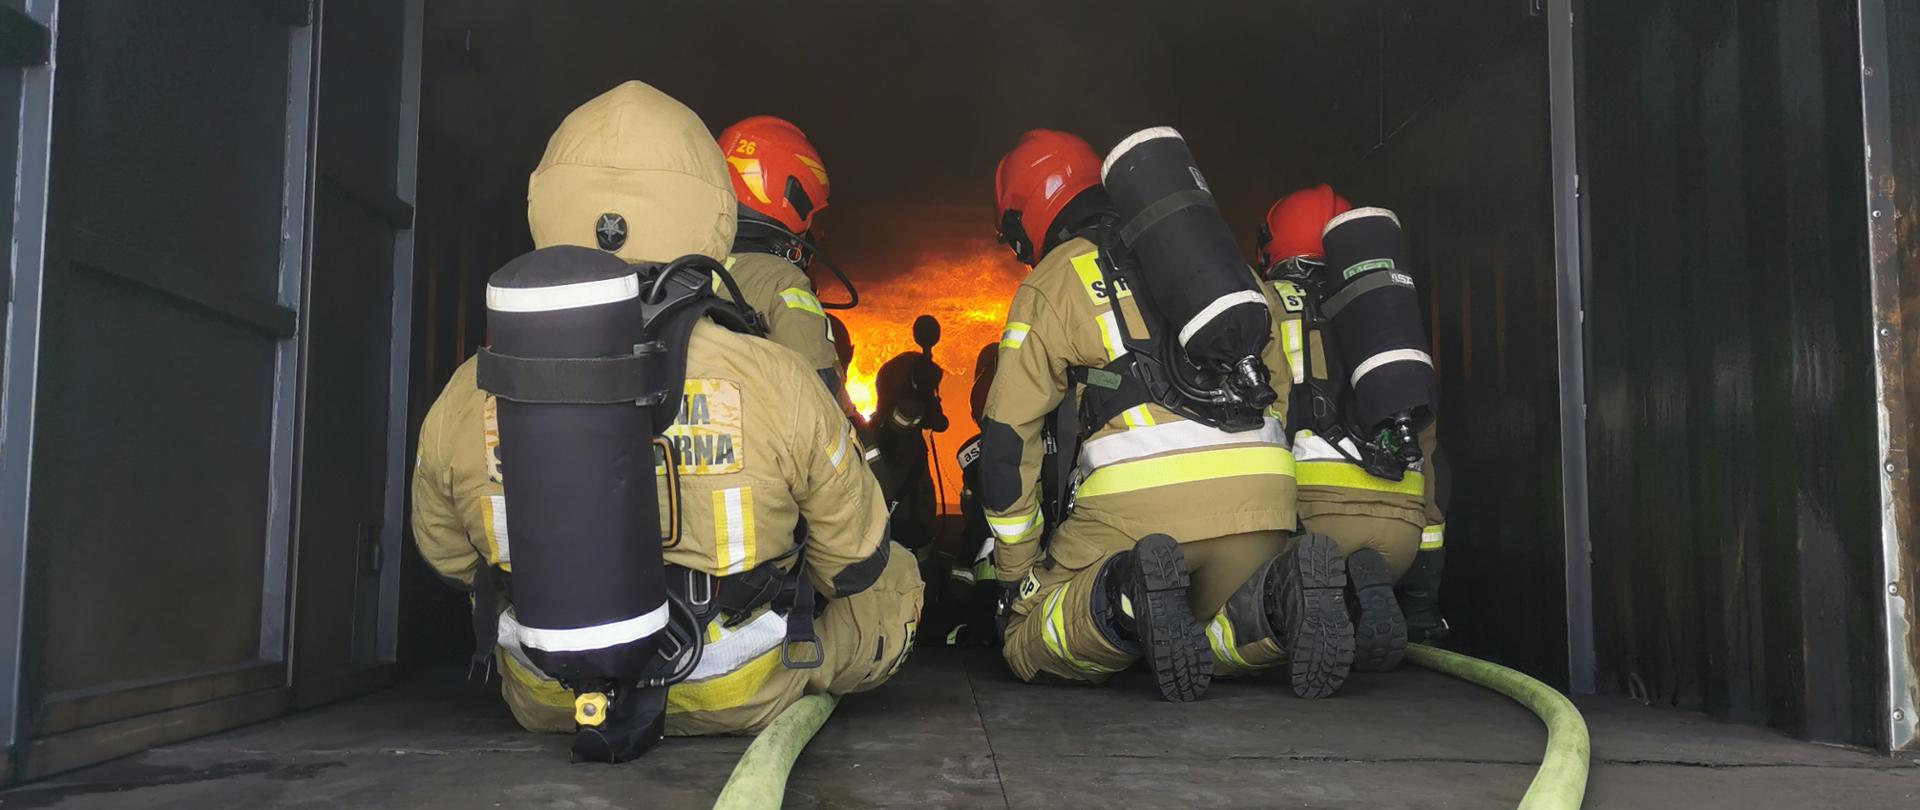 kleczący strażacy w jasnych mundurach bojowych i w hełmach, przed nimi ogień